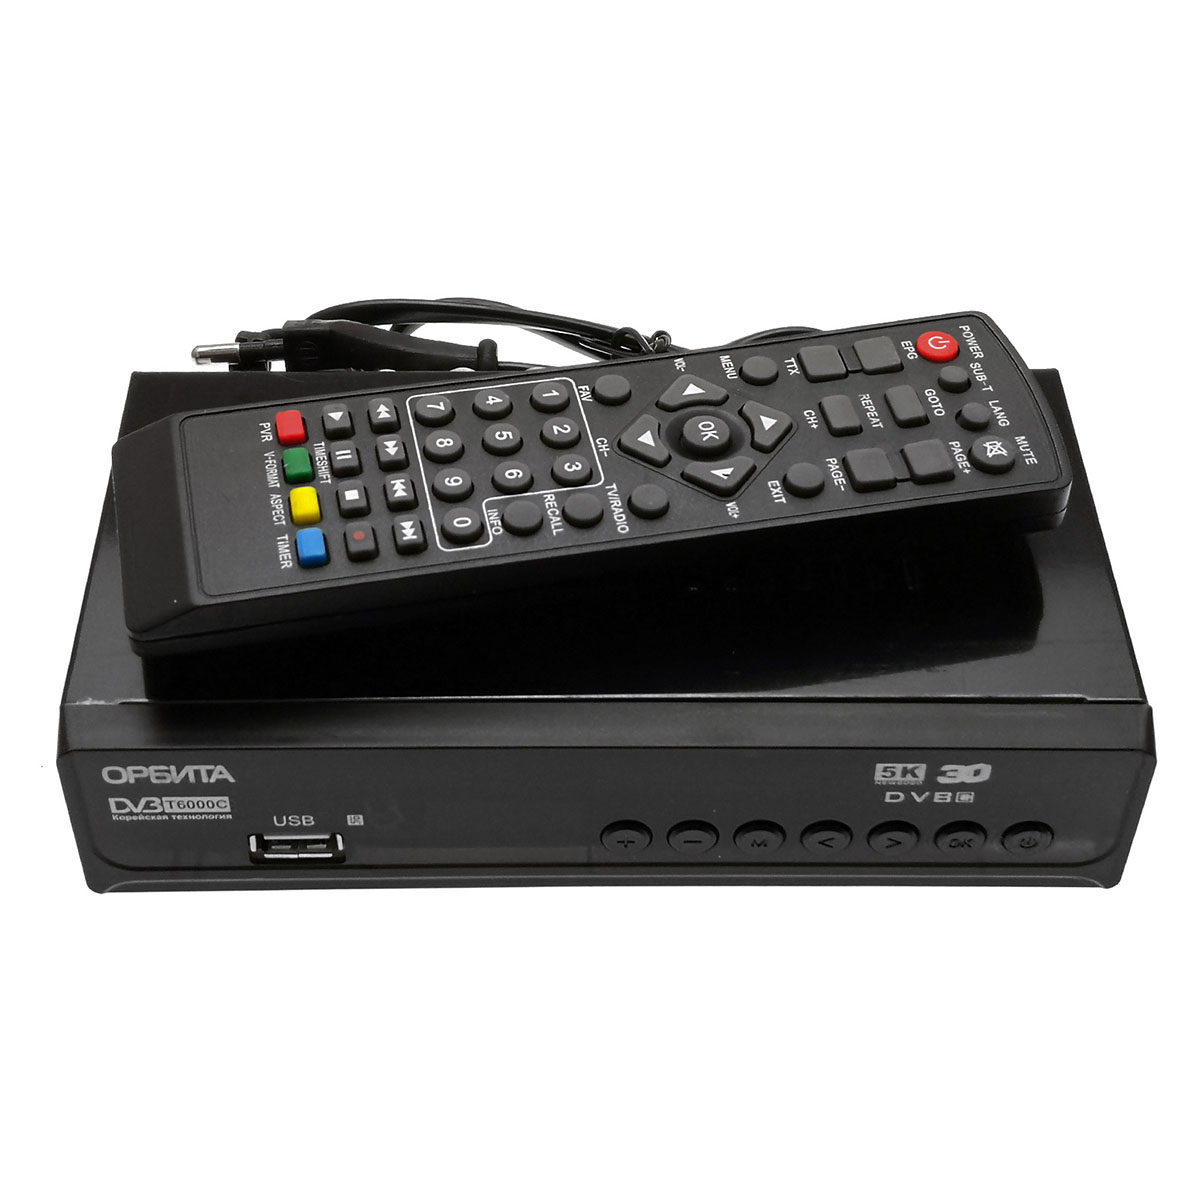 Цифровой эфирный приемник, ТВ приставка Орбита HD-911, DVB-T2, цвет черный